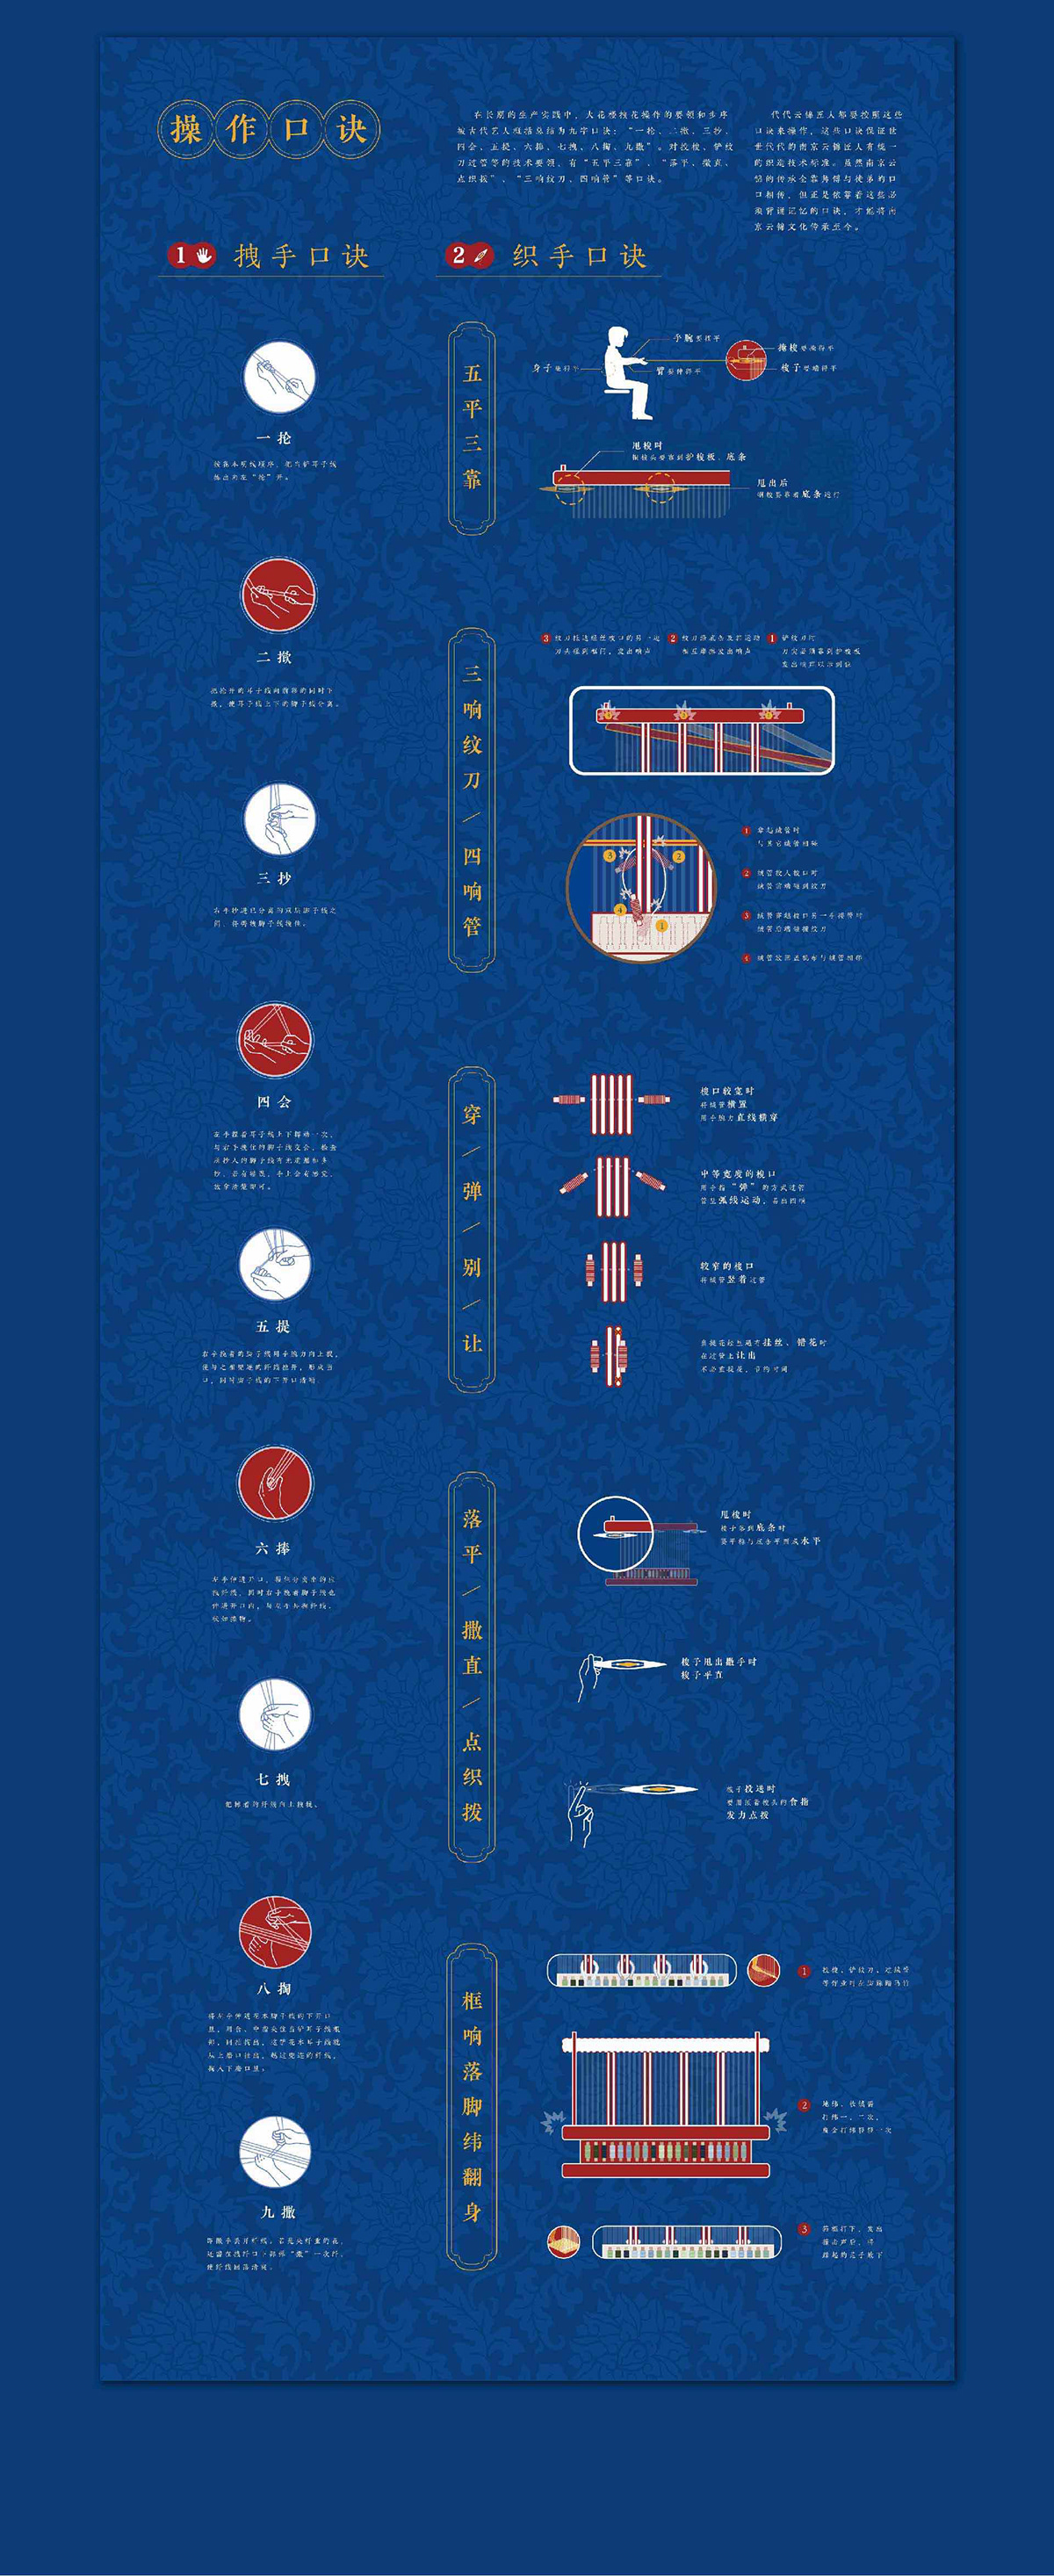 南京云锦 大花楼织机 信息可视化 非物质文化遗产 infographic design brocade Chinese culture